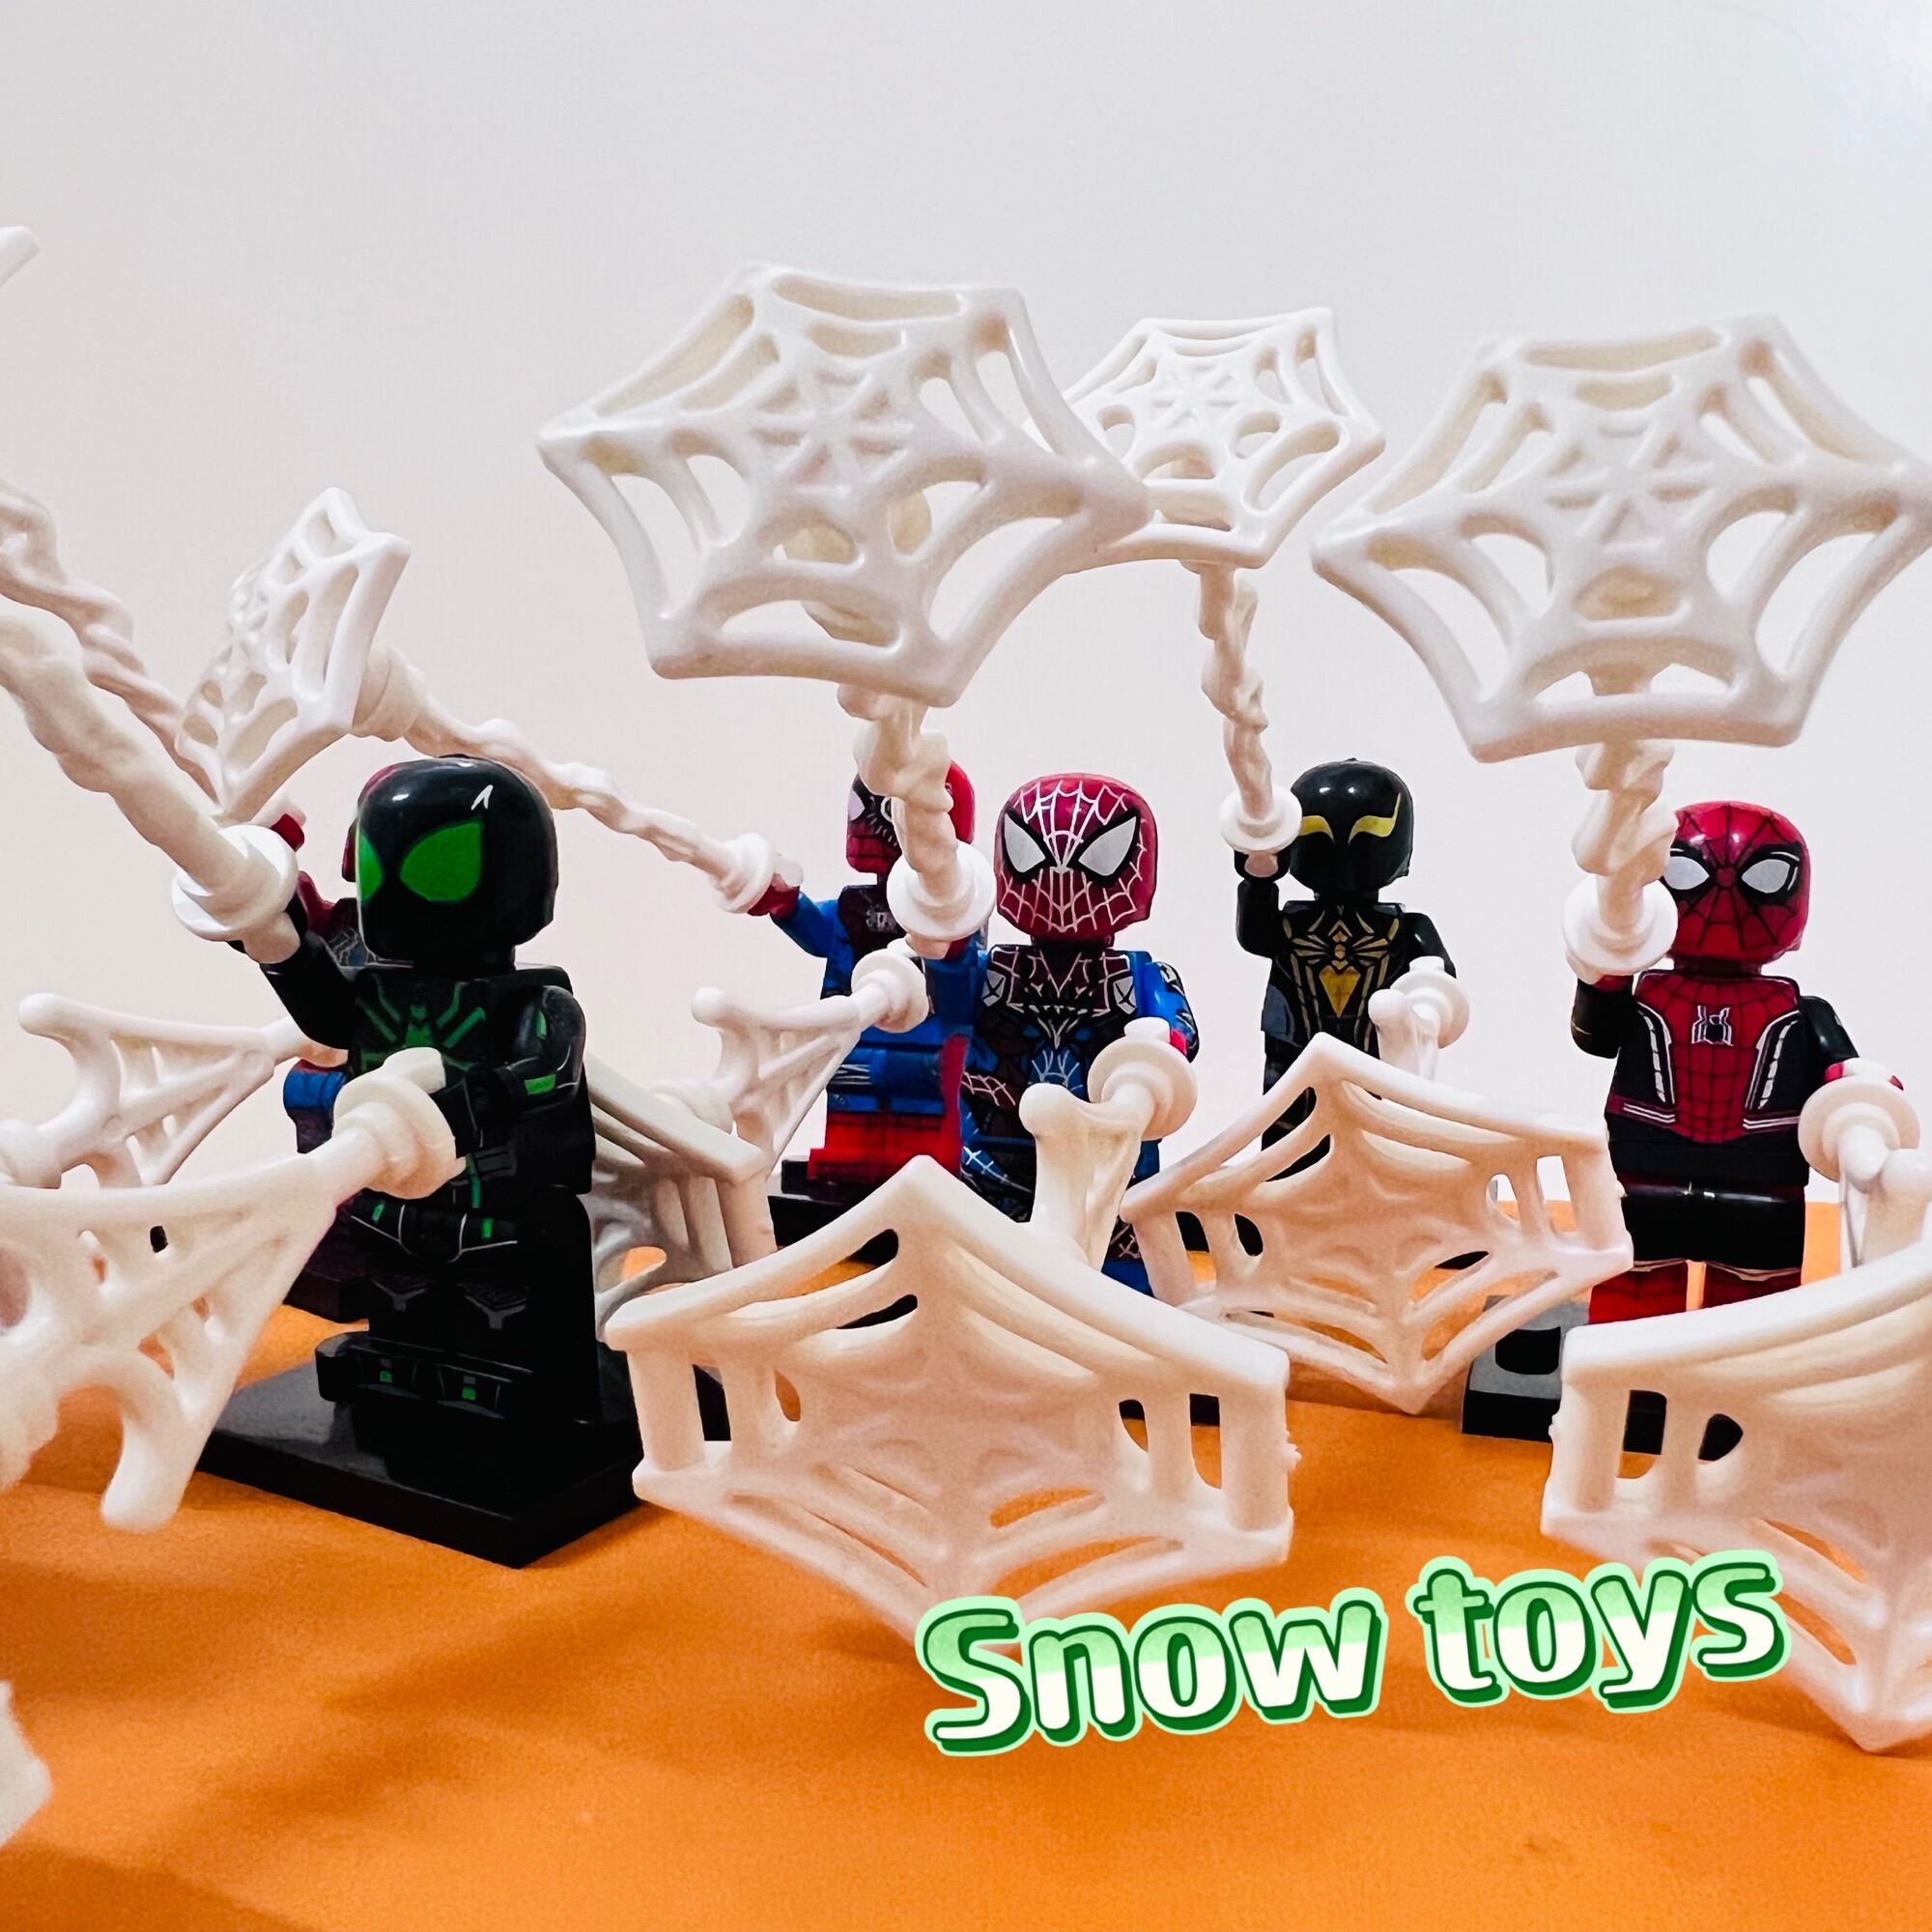 Minifigures Avengers Marvel - Mô hình các nhân vật Người nhện Spider man